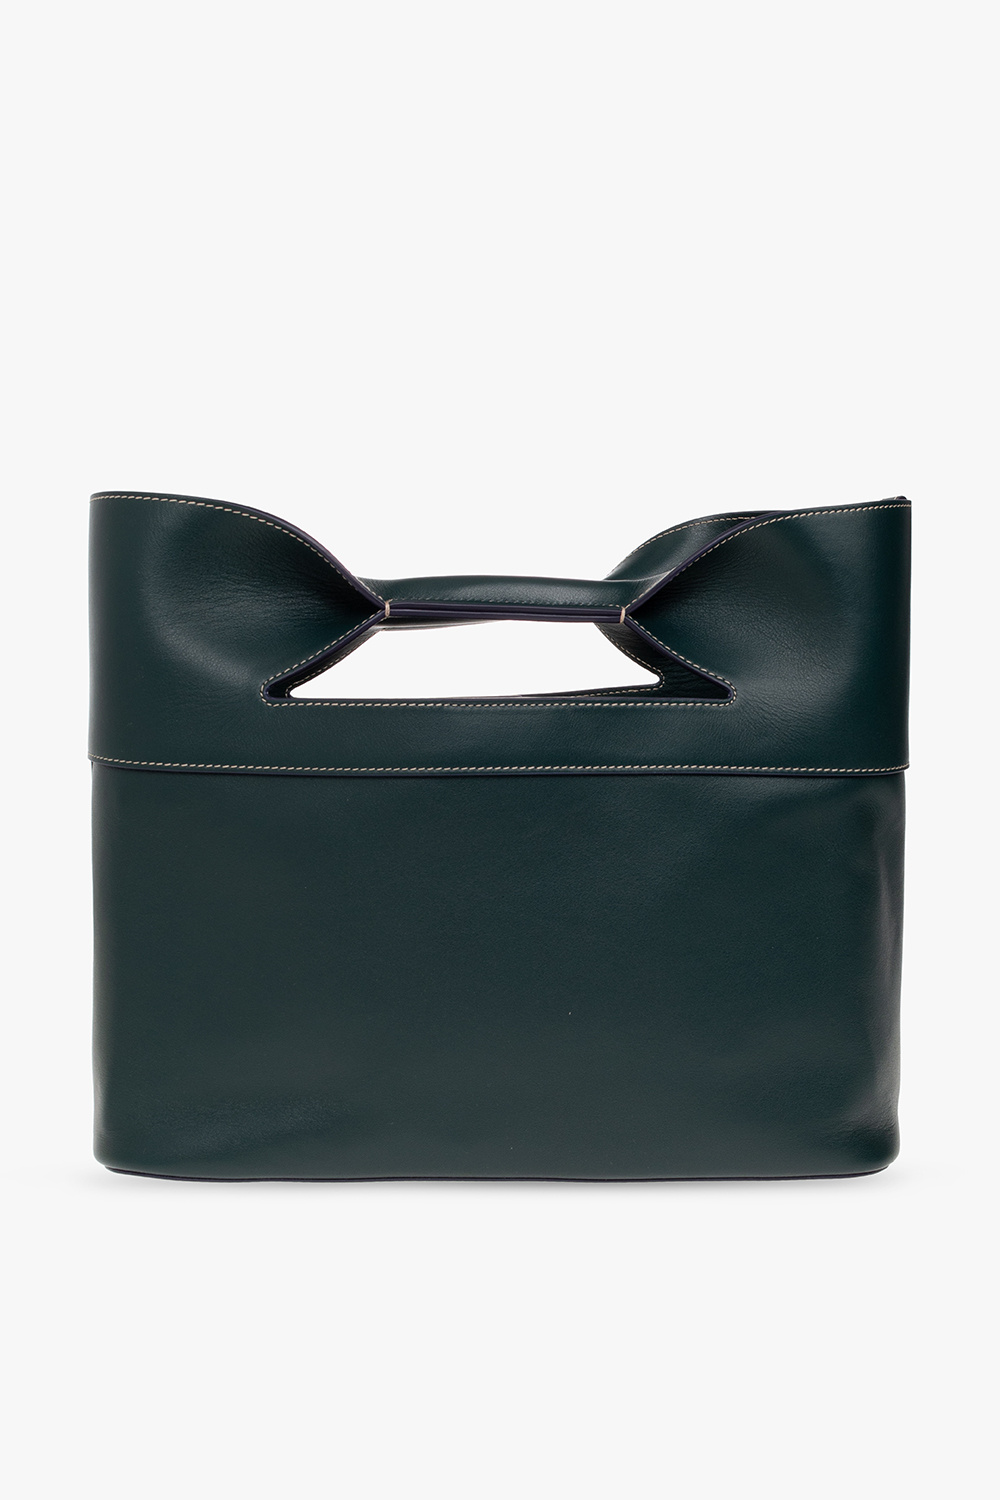 Alexander McQueen The Bow Small’ shopper bag